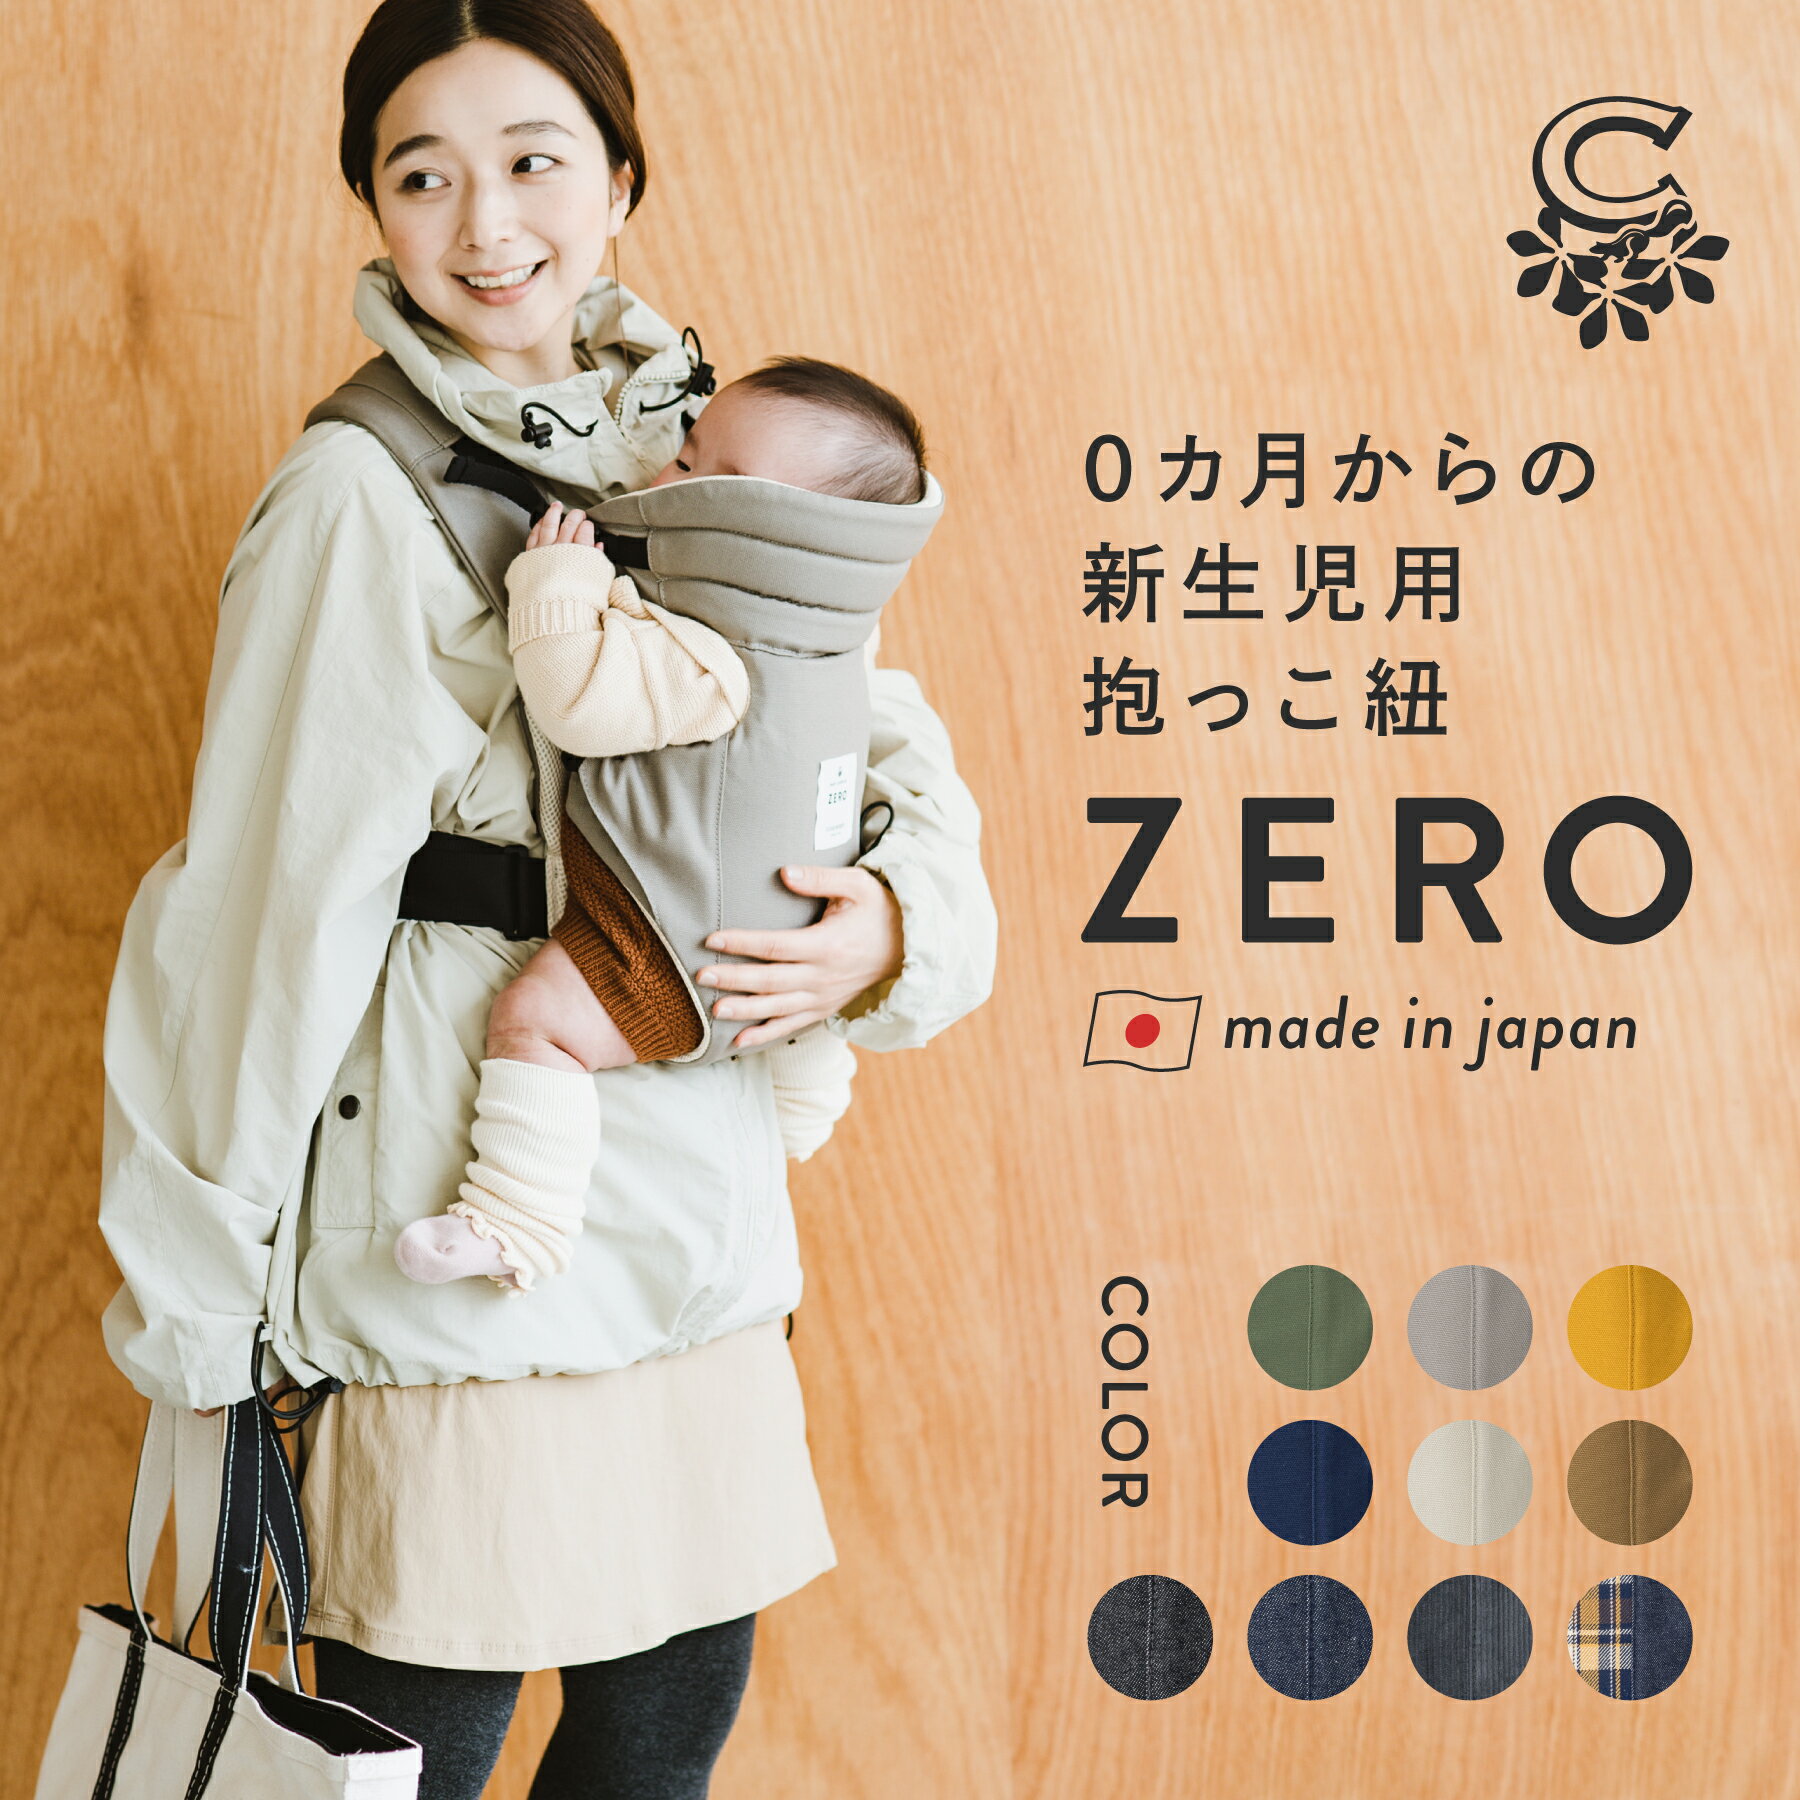 【レビュー特典付き】キューズベリー 抱っこ紐 ZERO 日本製 新生児から使える 縦抱き 0カ月 首すわり前 軽い メッシュ素材 おしゃれ ヘッドサポート コンパクト 簡単 前開き 抱っこひも だっこ…